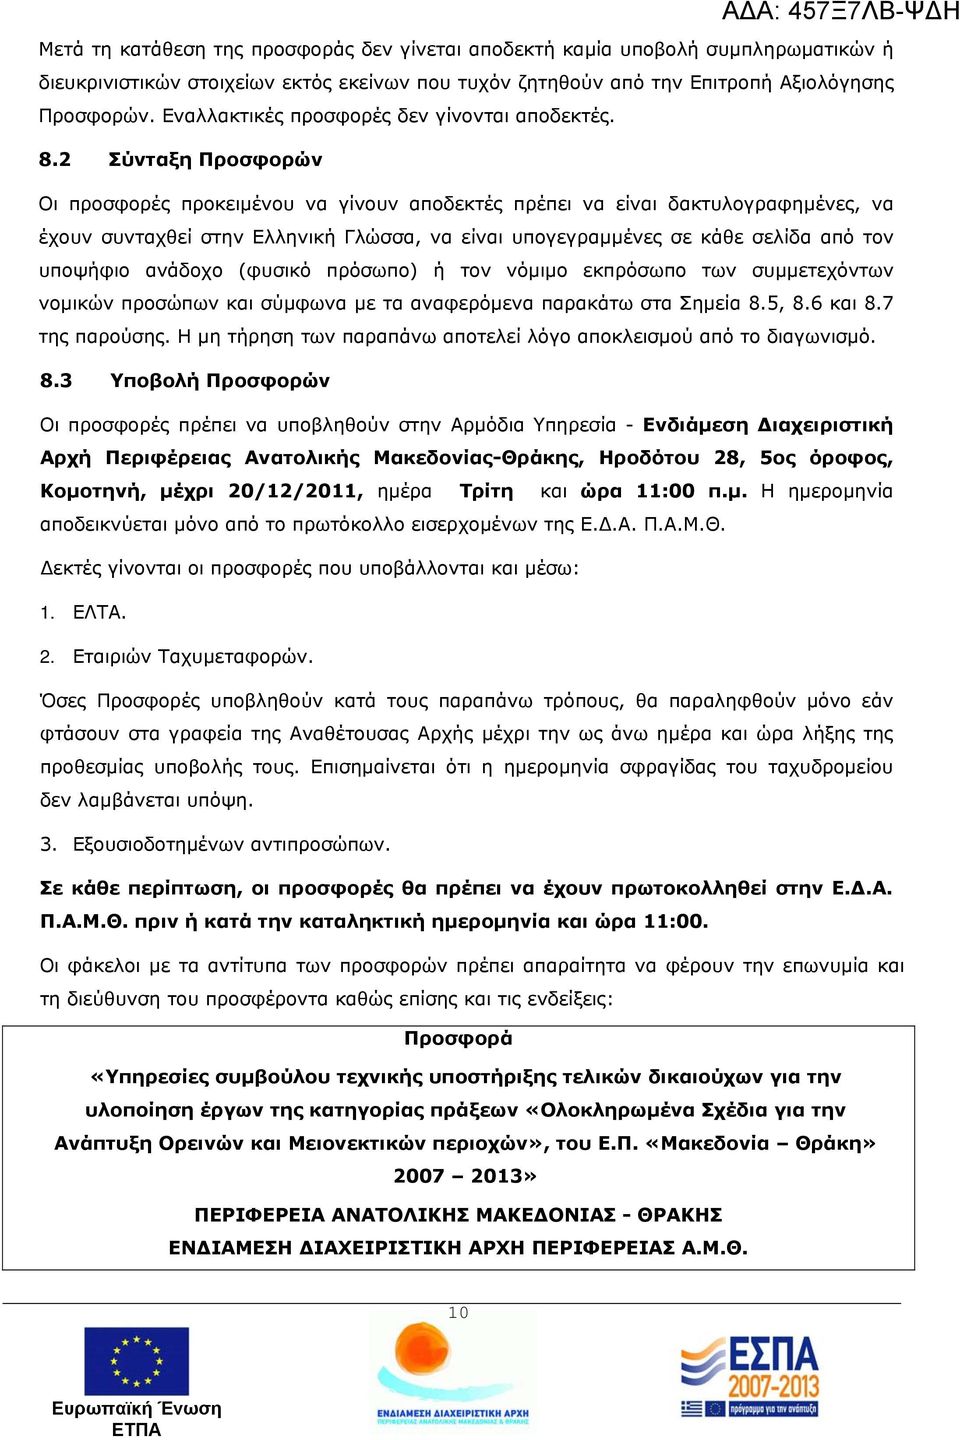 2 Σύνταξη Προσφορών Οι προσφορές προκειμένου να γίνουν αποδεκτές πρέπει να είναι δακτυλογραφημένες, να έχουν συνταχθεί στην Ελληνική Γλώσσα, να είναι υπογεγραμμένες σε κάθε σελίδα από τον υποψήφιο